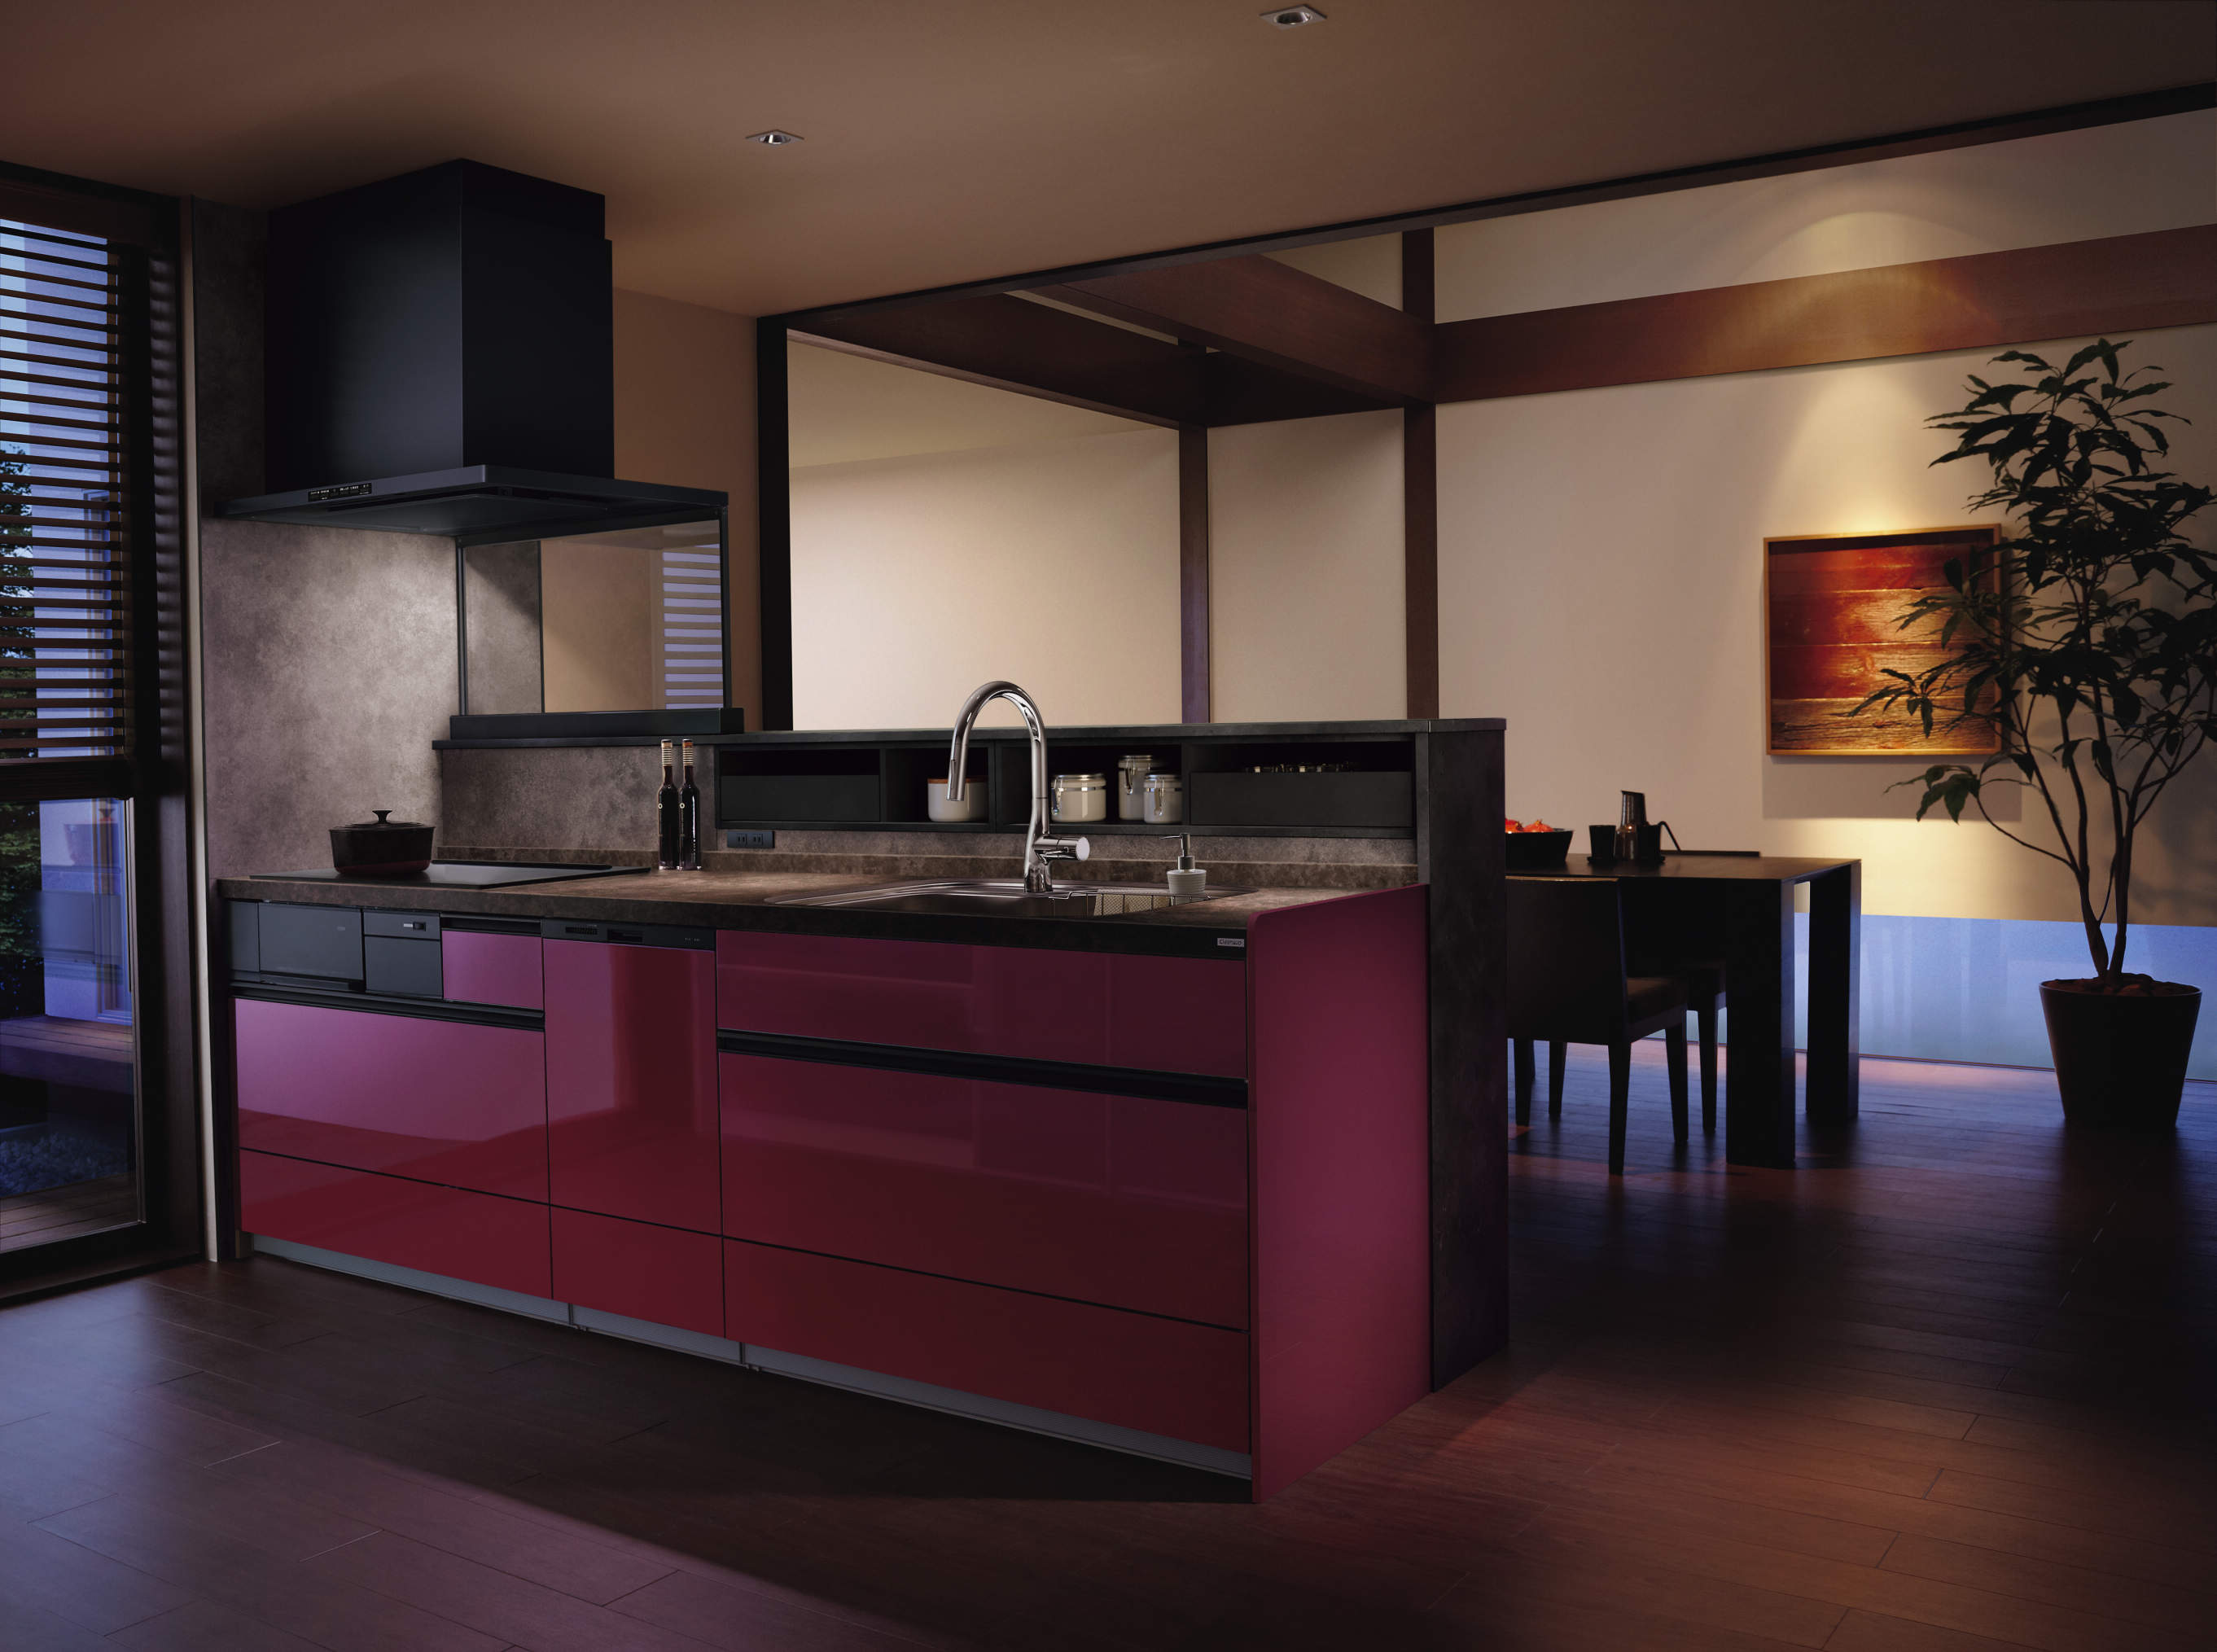 和のテイストに存在感のあるレッド色のキッチン サムネイル画像